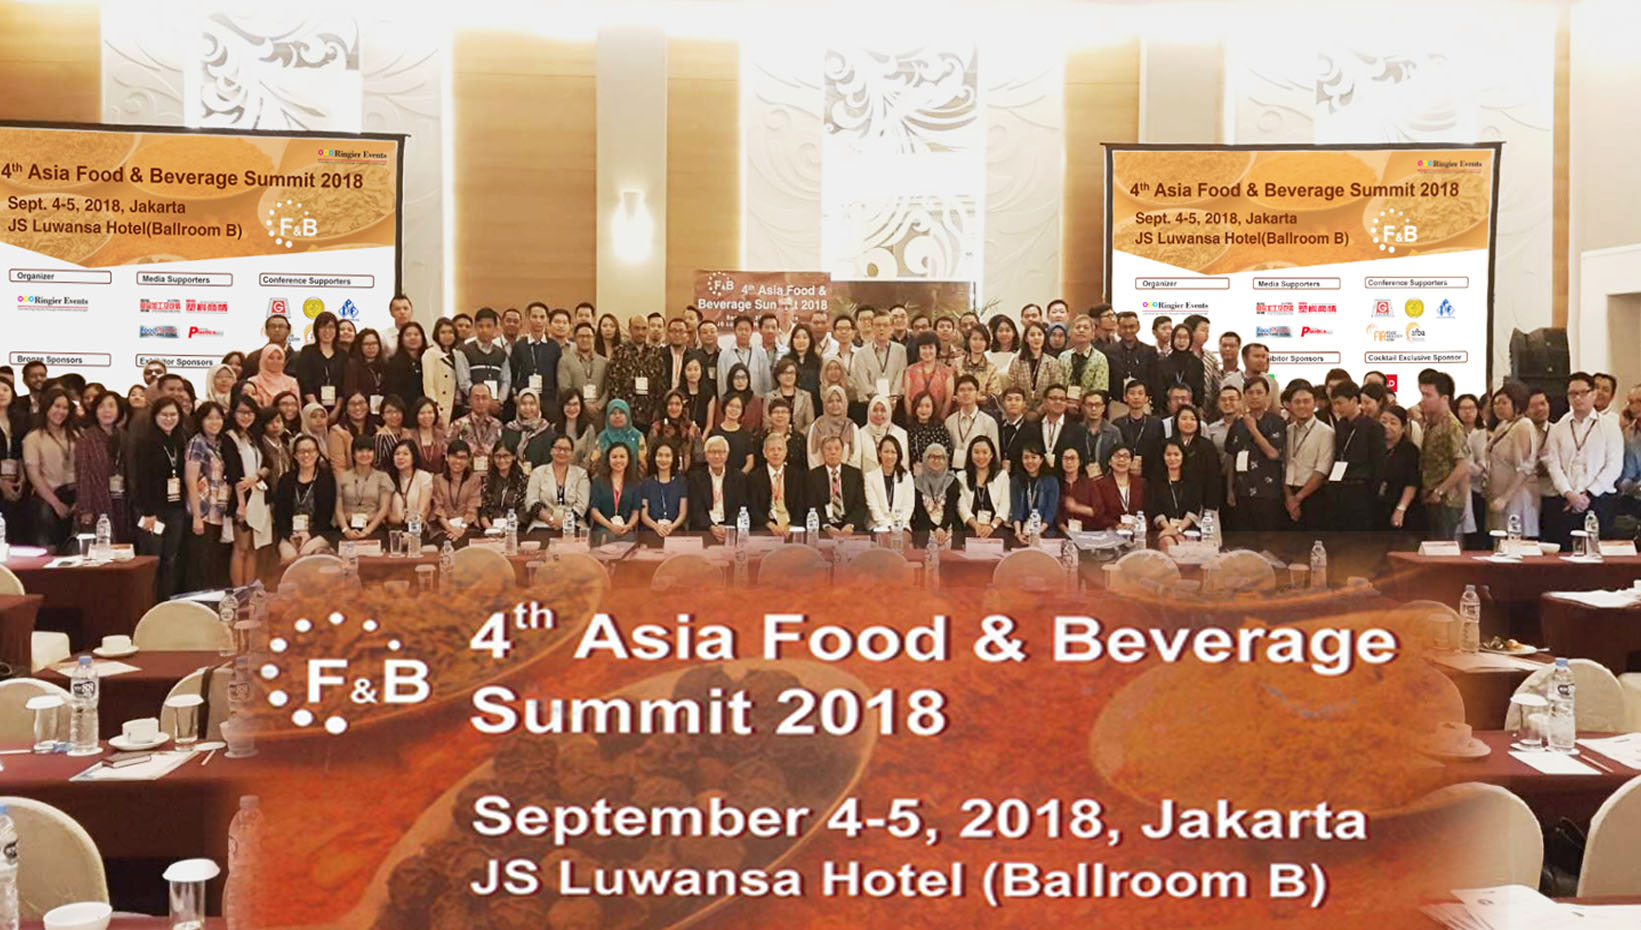 印尼亞洲食品飲料峰會, 黃豆加工機械, 食品加工設備展